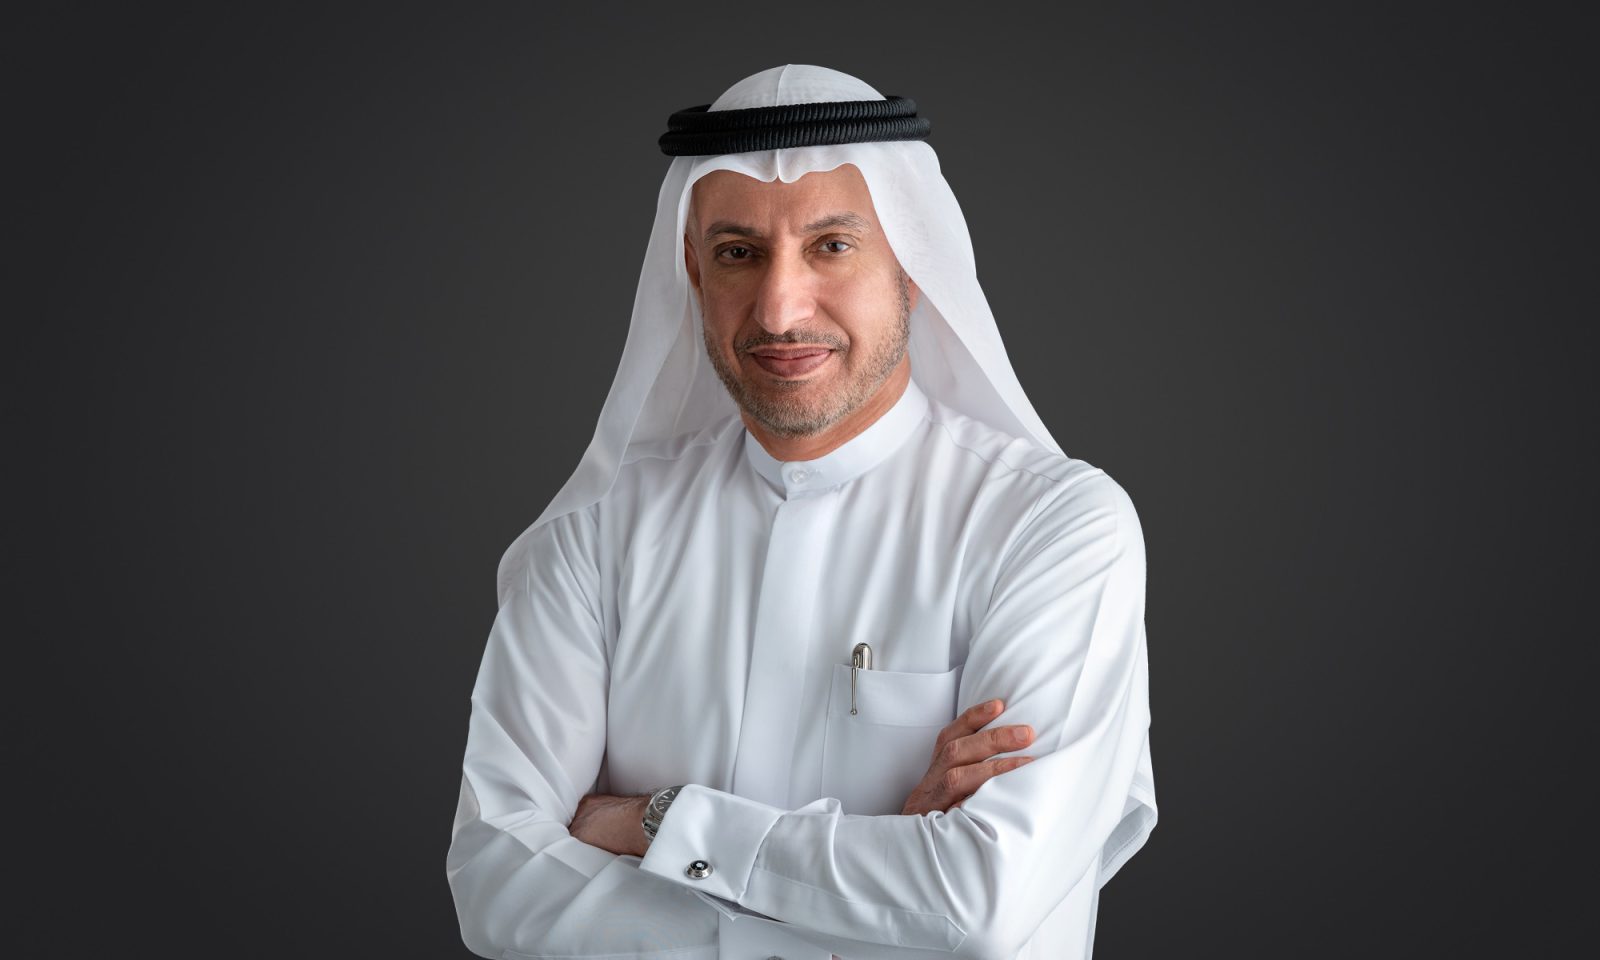 H.E Dr. Mohammed Al Zarooni